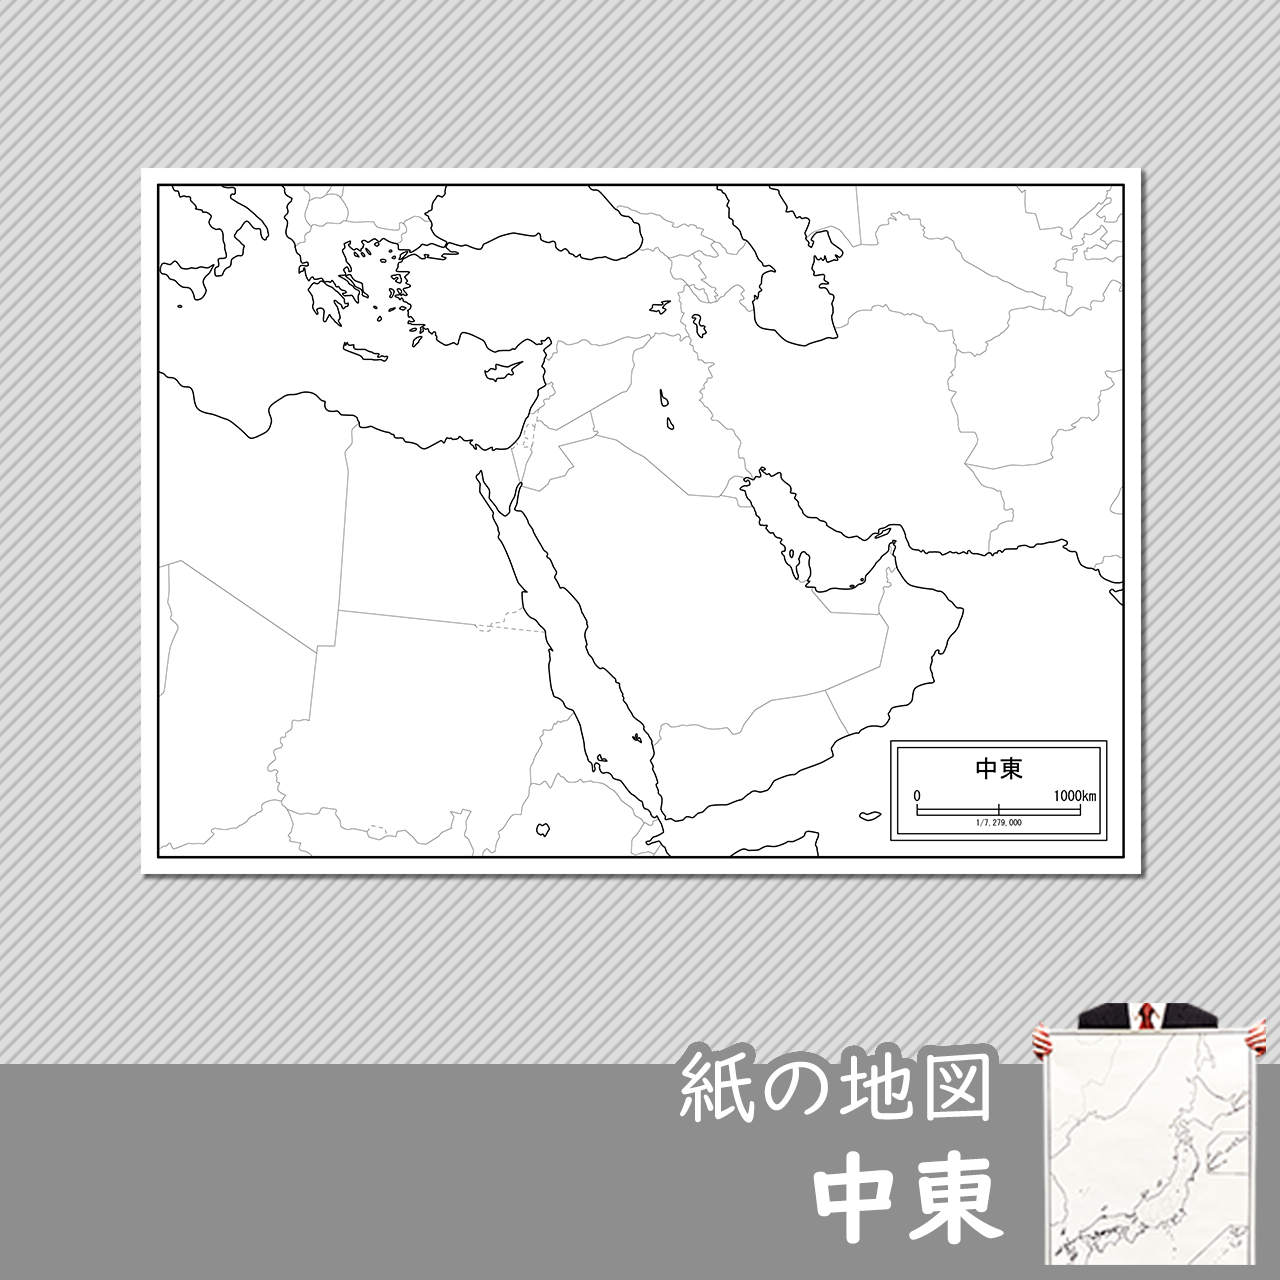 中東の紙の白地図のサムネイル